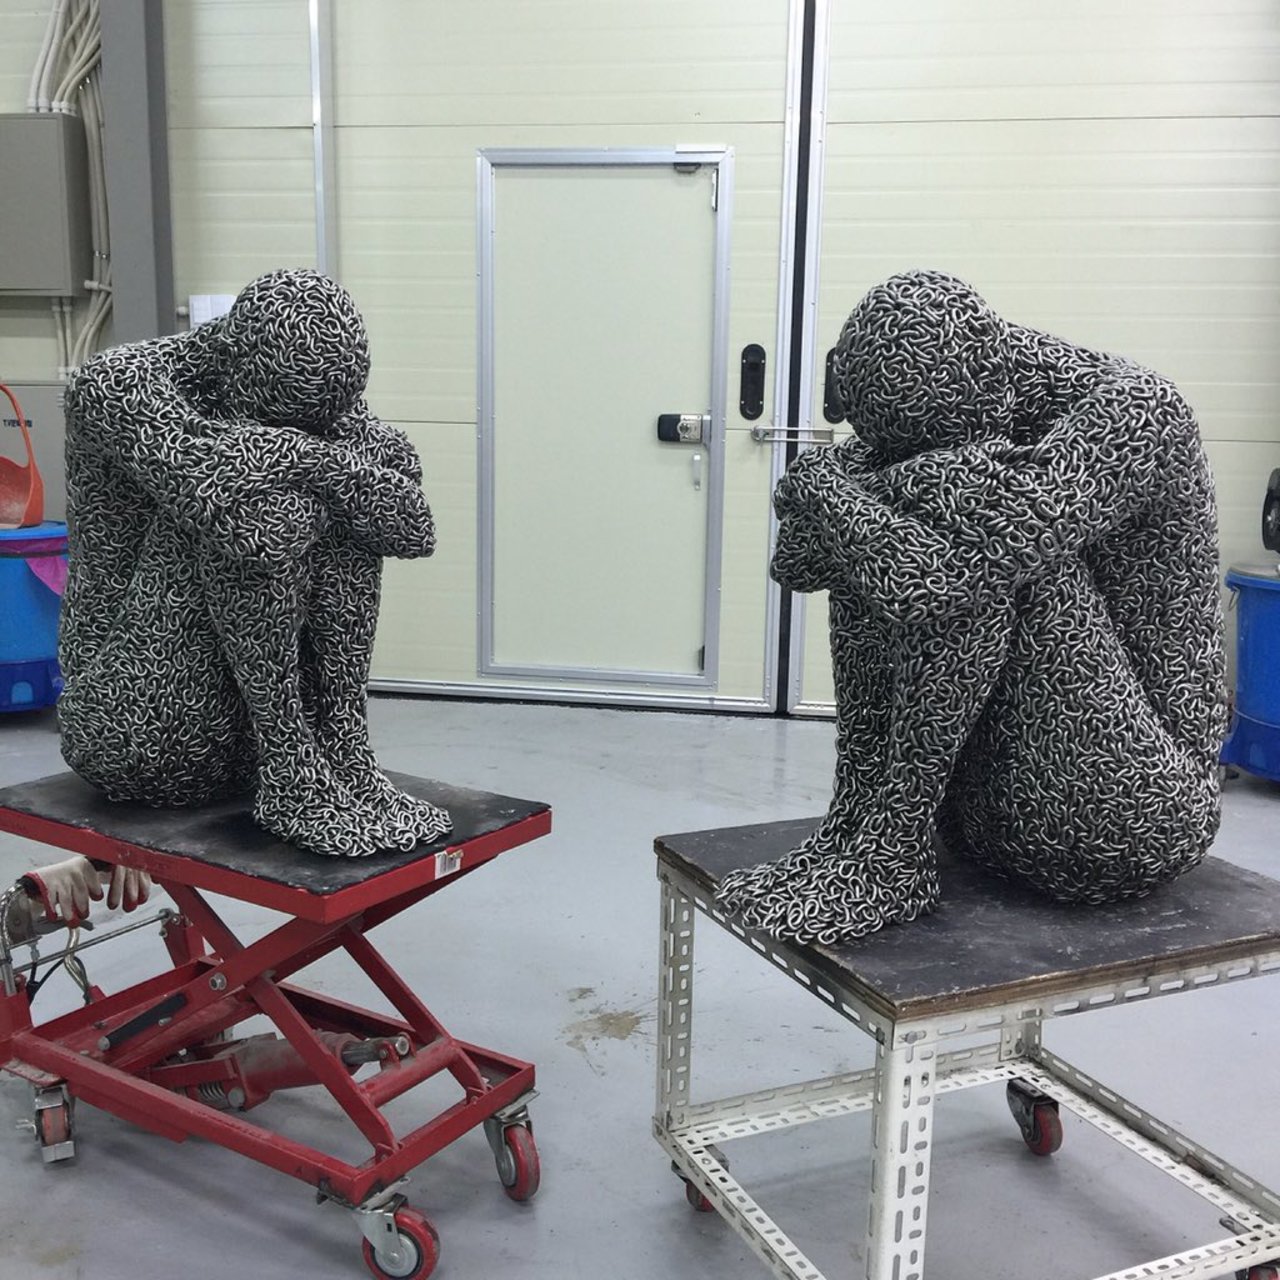 RT @artistdeok: #seoyoungdeok #sculpture #chainreaction #art #atelier https://t.co/zVks4unUQ2